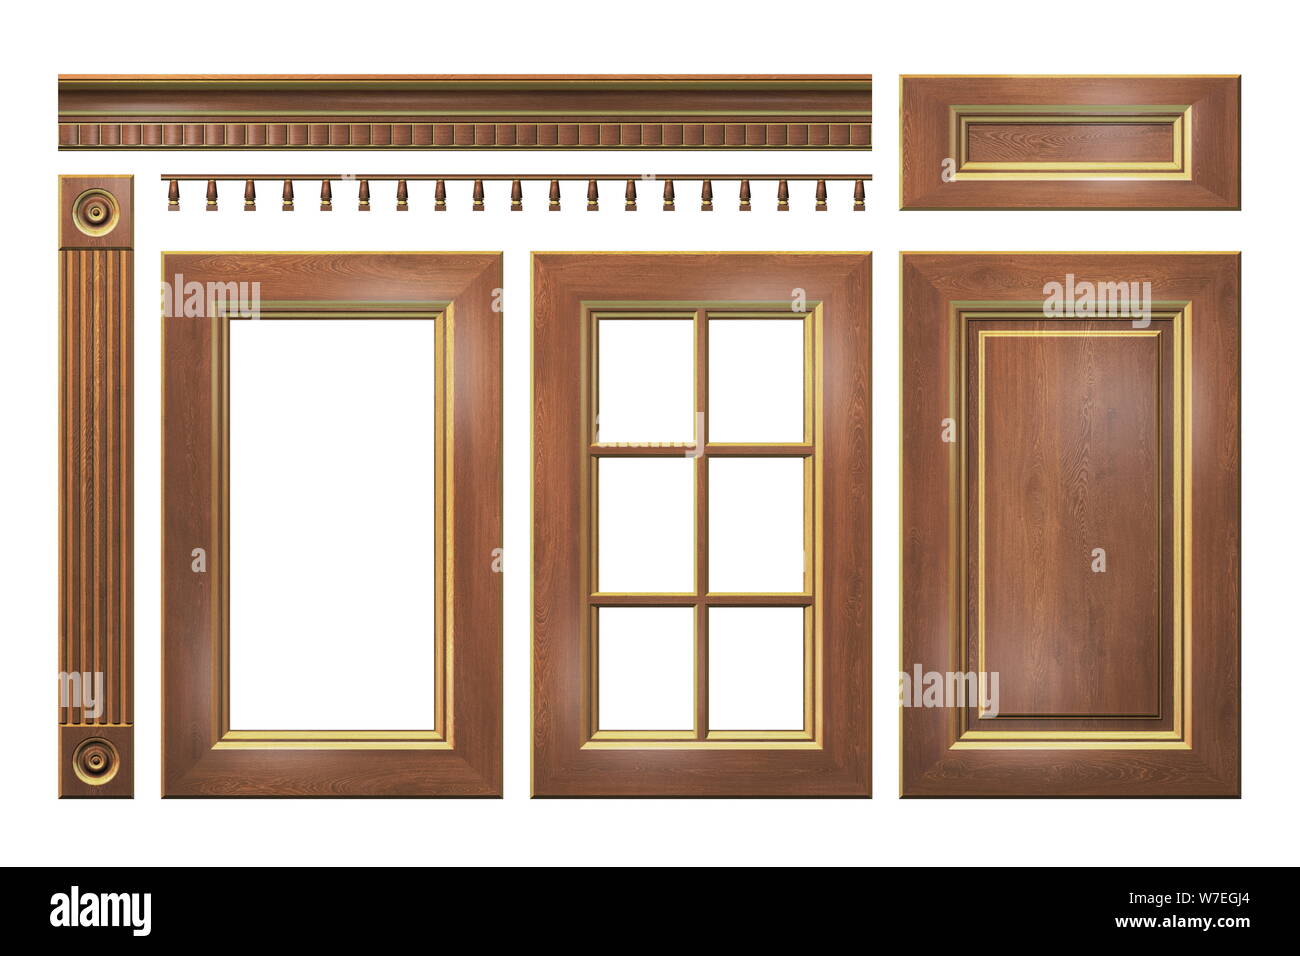 Porte en bois avec de l'or, tiroir, colonne, corniche pour meuble de cuisine isolated on white Banque D'Images